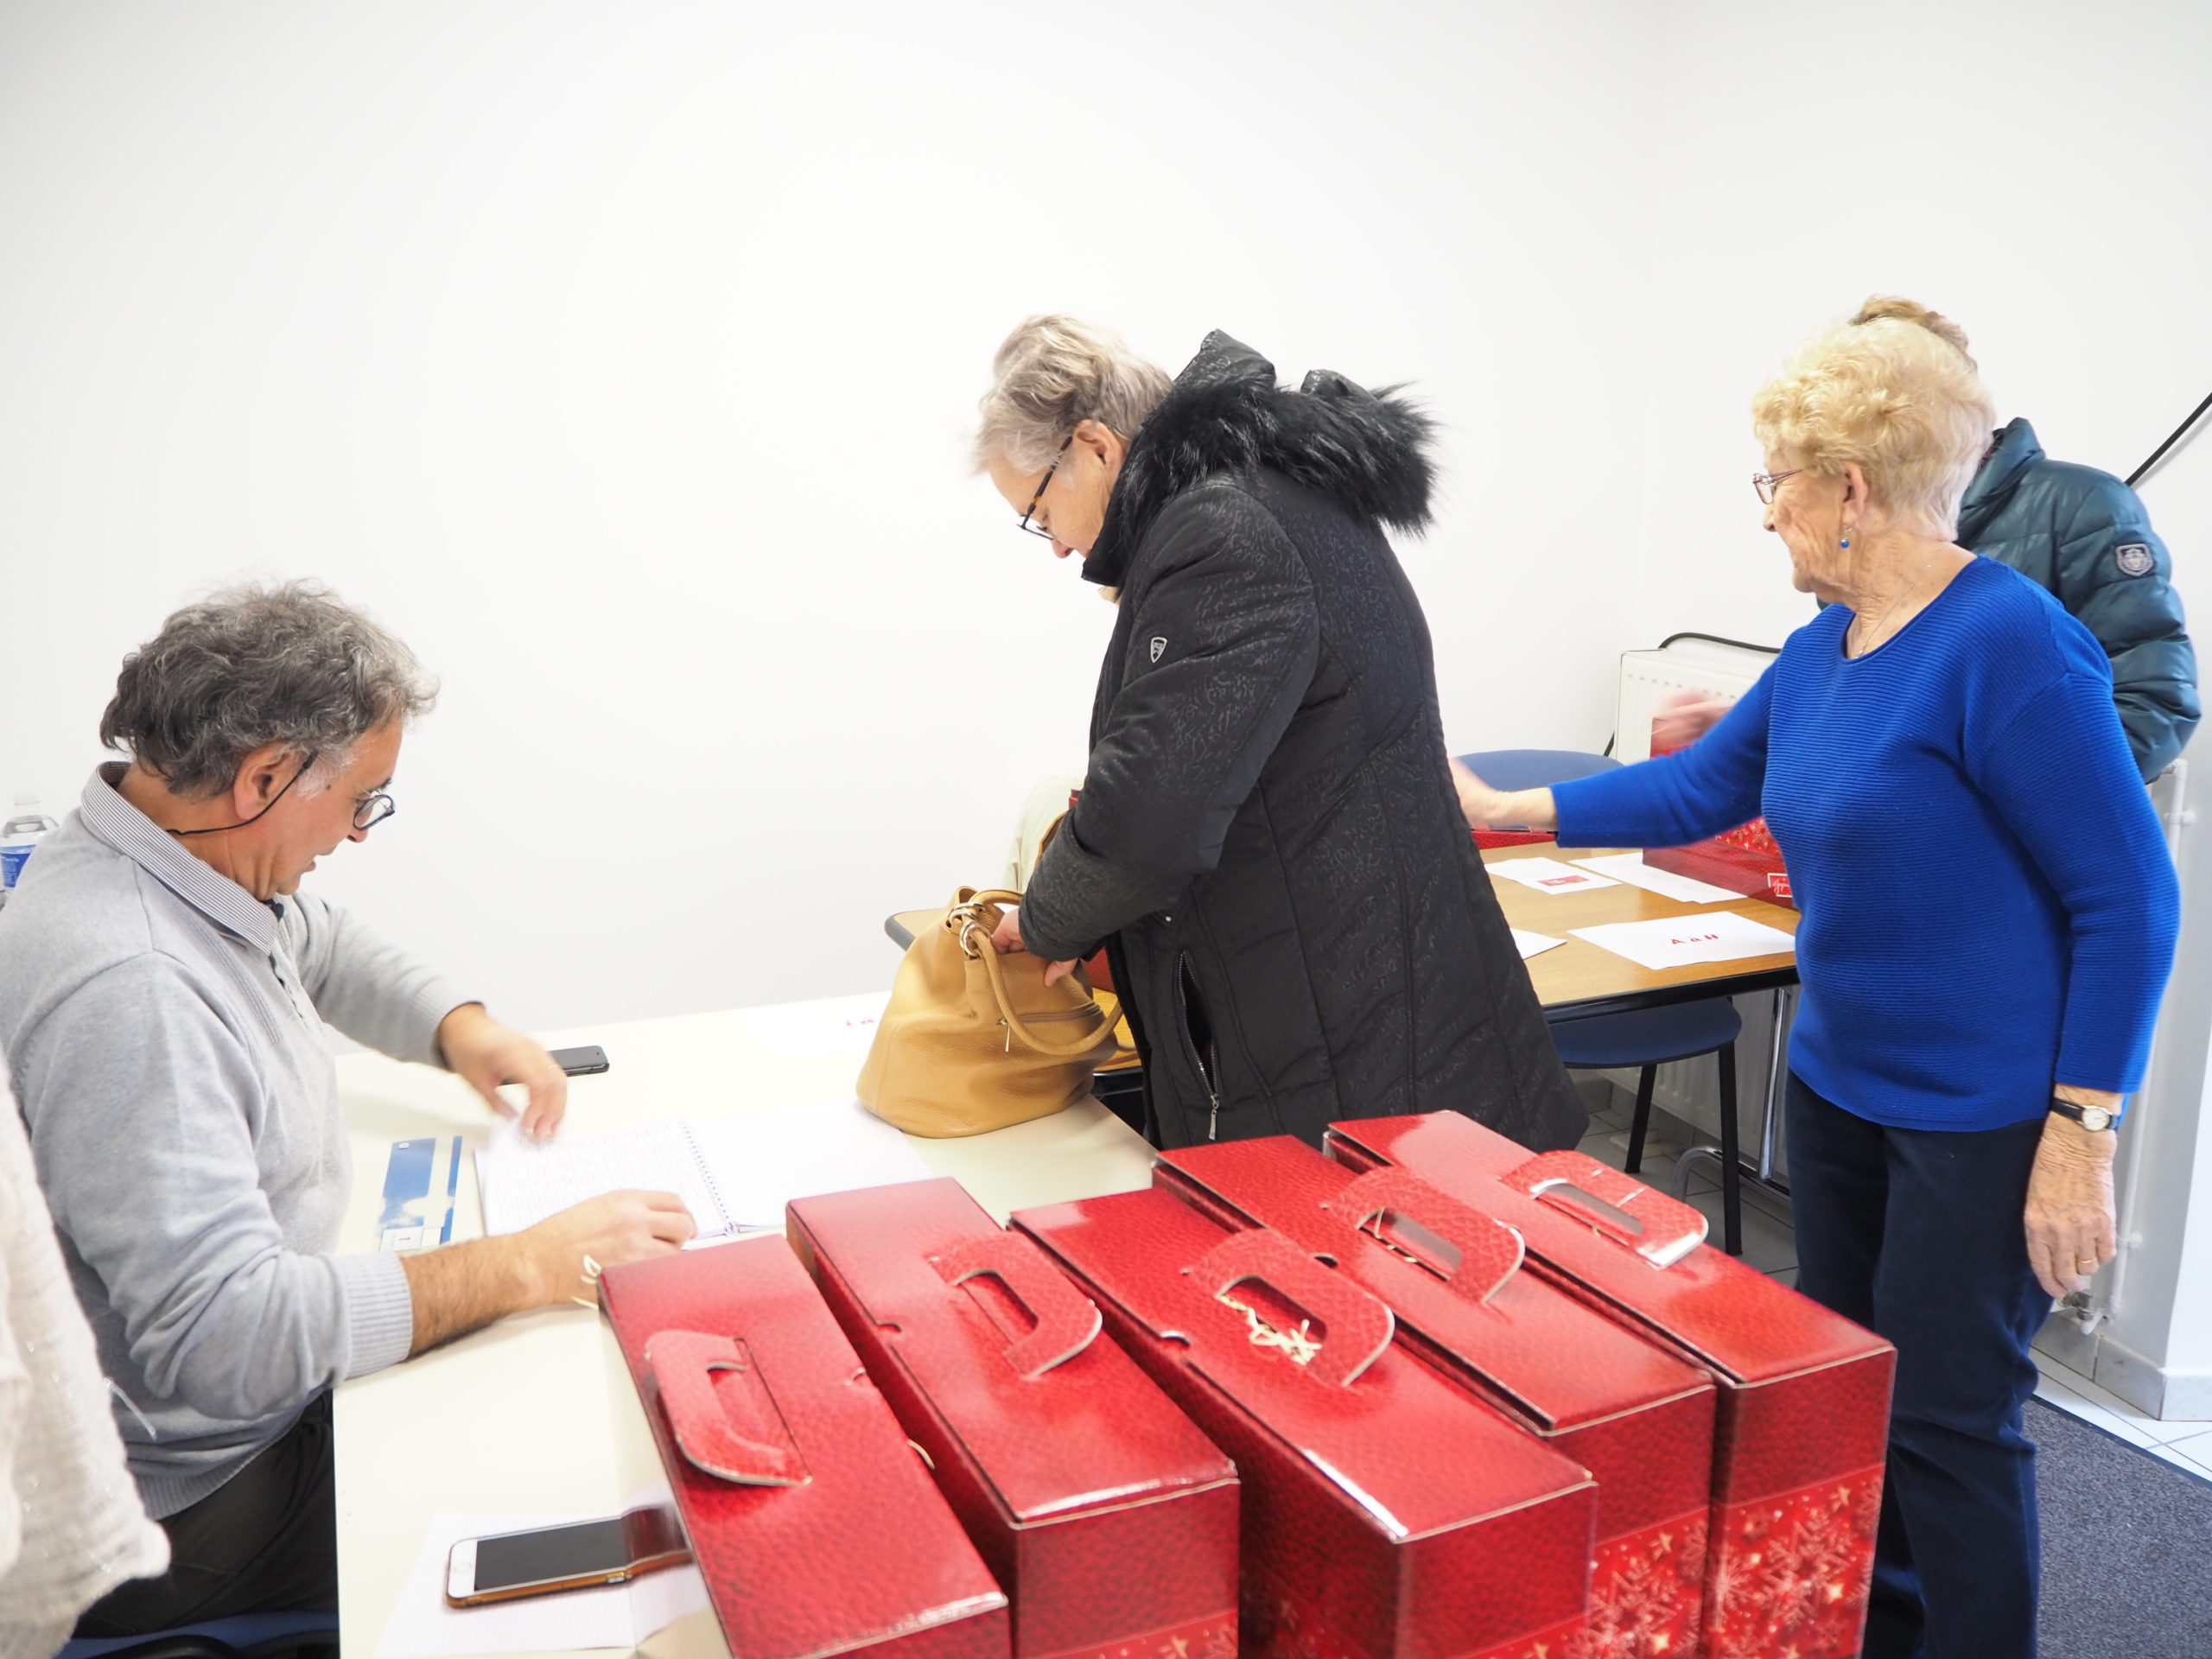 Permanences de distribution des colis de Noël pour les seniors